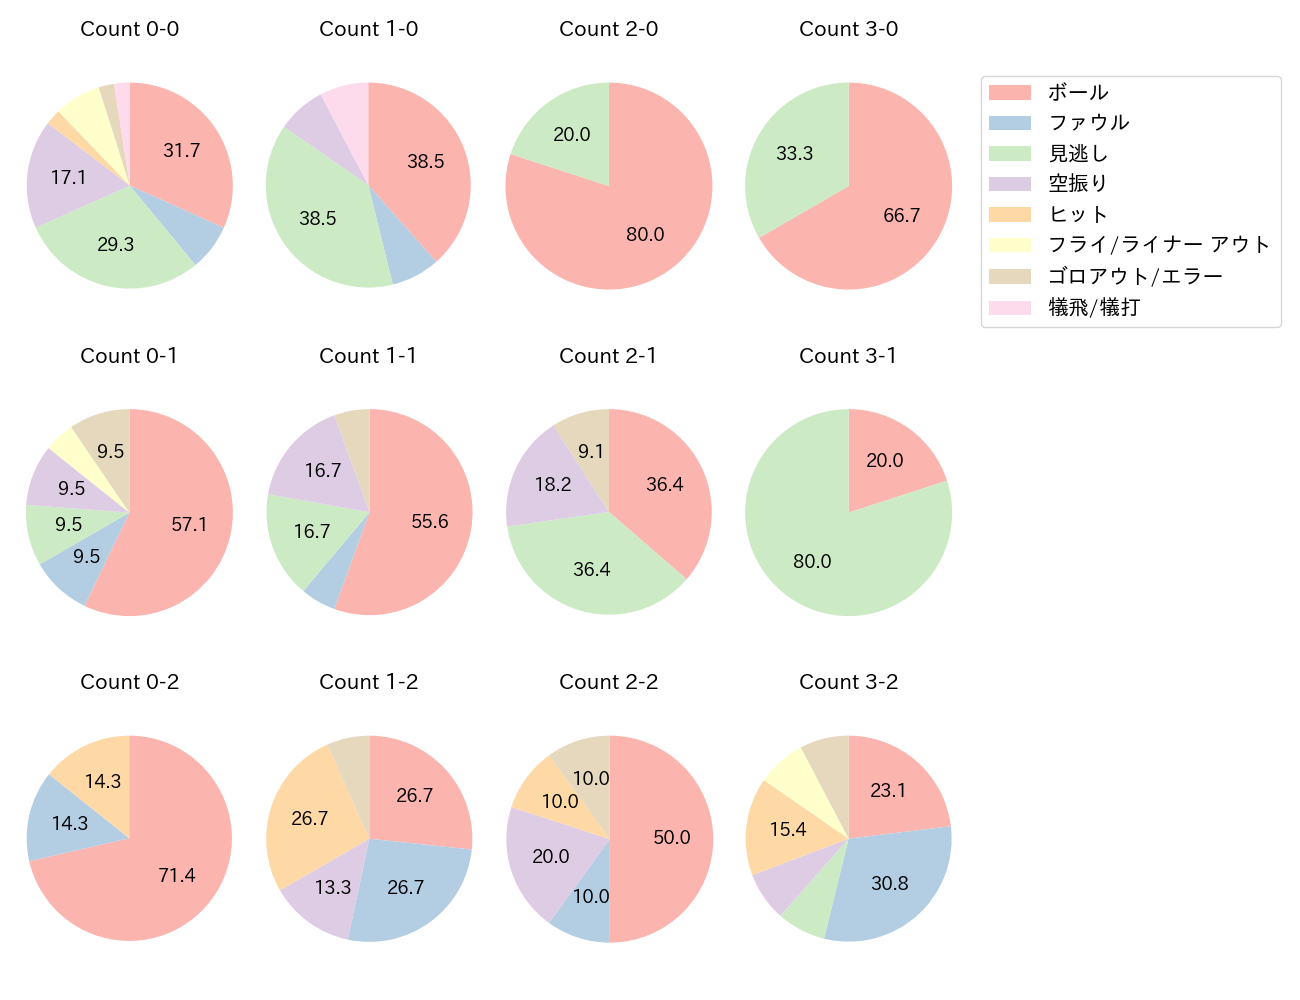 岡 大海の球数分布(2022年7月)